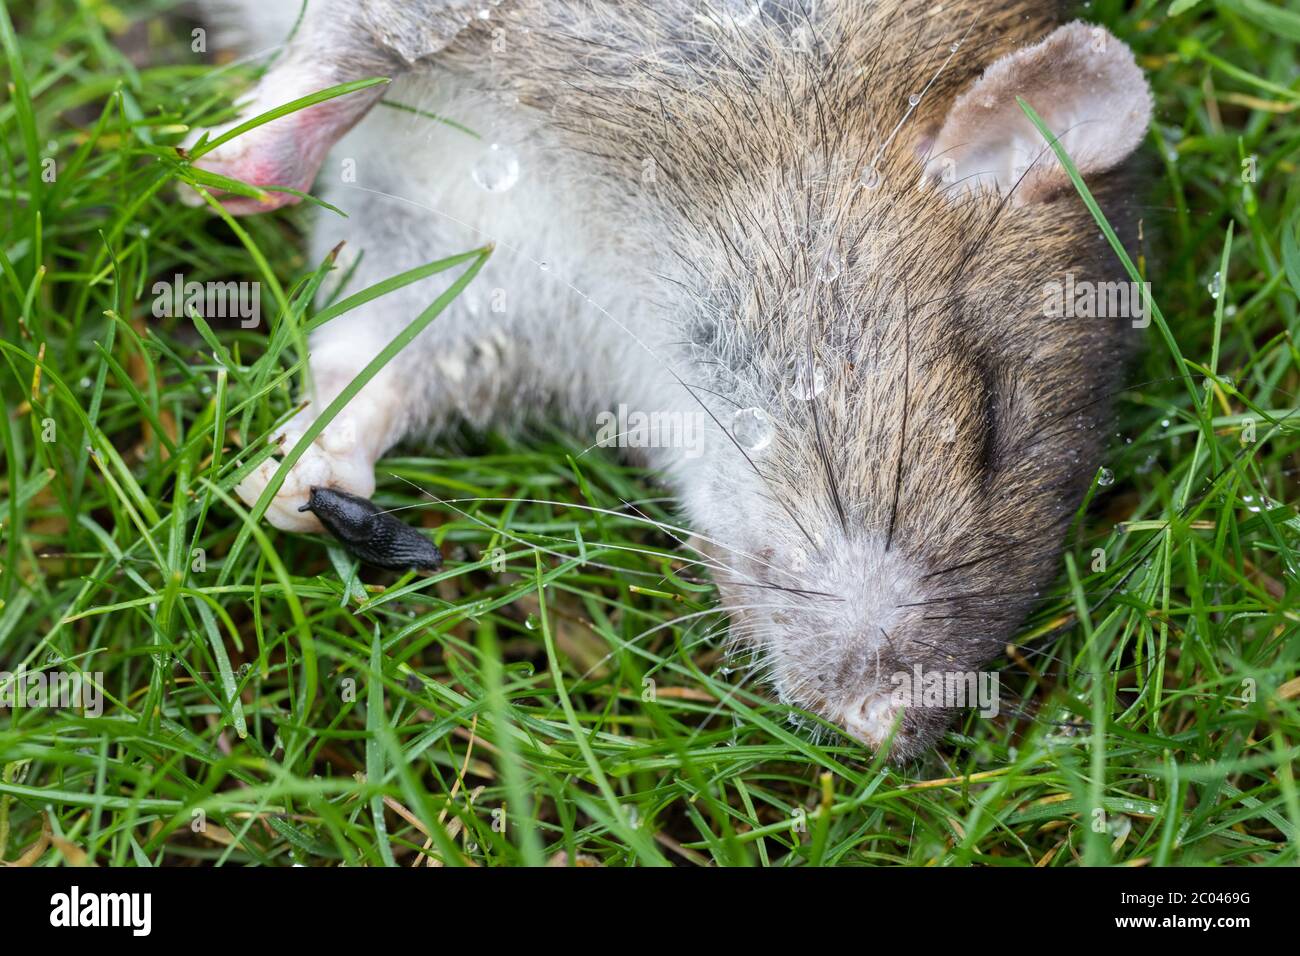 https://c8.alamy.com/compfr/2c0469g/rat-empoisonne-mort-avec-une-petite-tasse-noire-gros-plan-sur-la-chaine-alimentaire-rat-mort-rat-brun-empoisonne-allonge-sur-une-pelouse-de-jardin-organisme-nuisible-sur-l-herbe-2c0469g.jpg